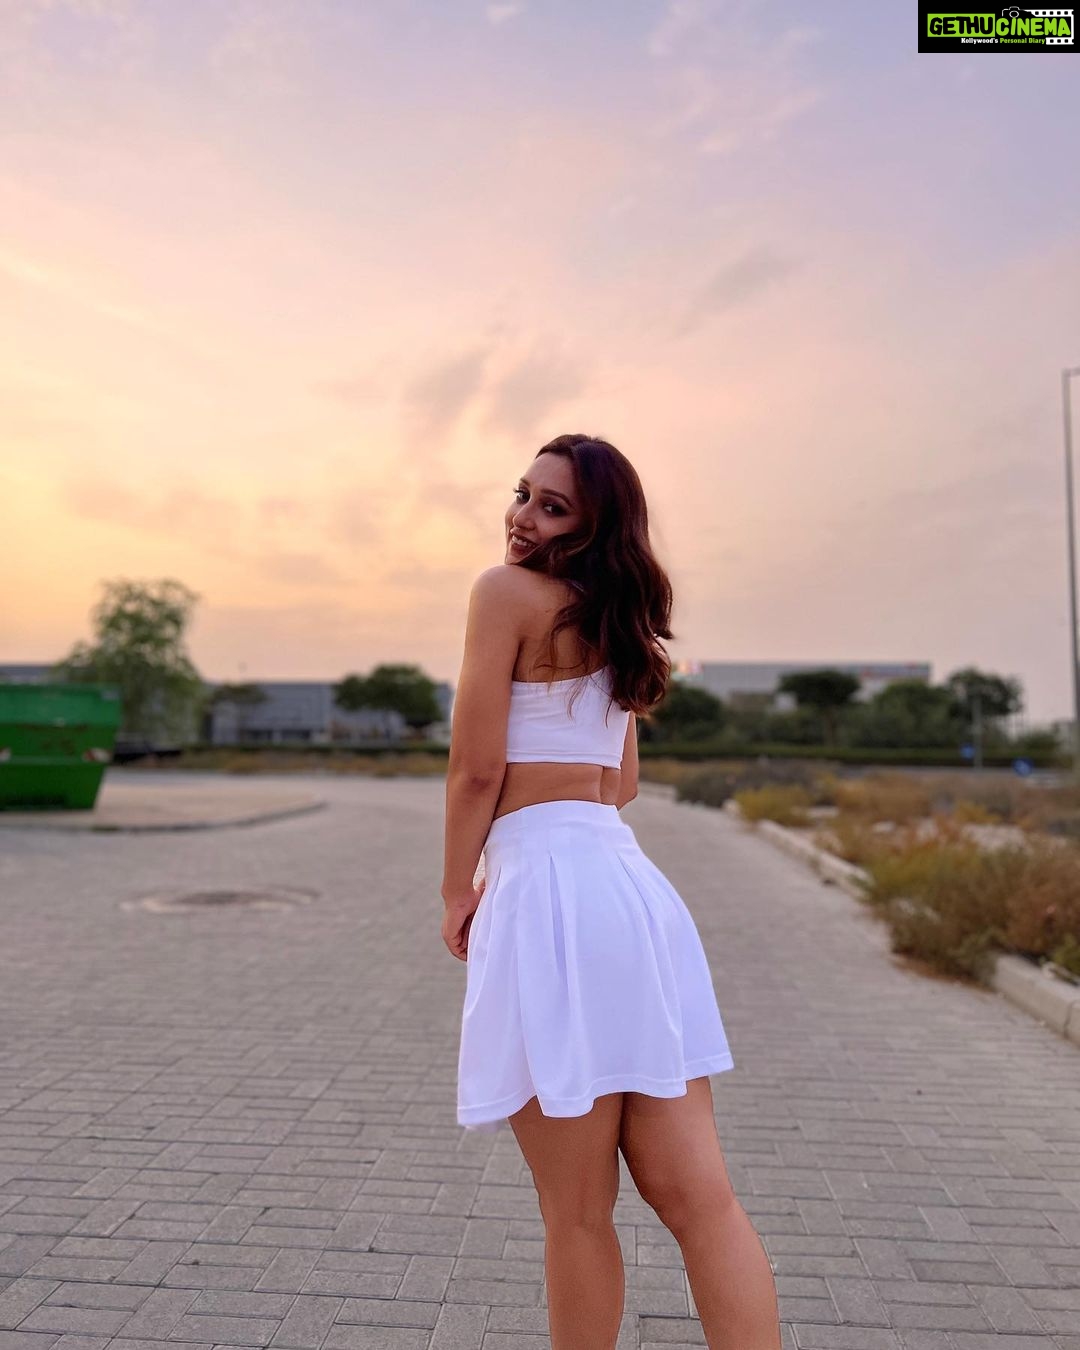 Mimi Chakraborty - 71.5K Likes - Most Liked Instagram Photos